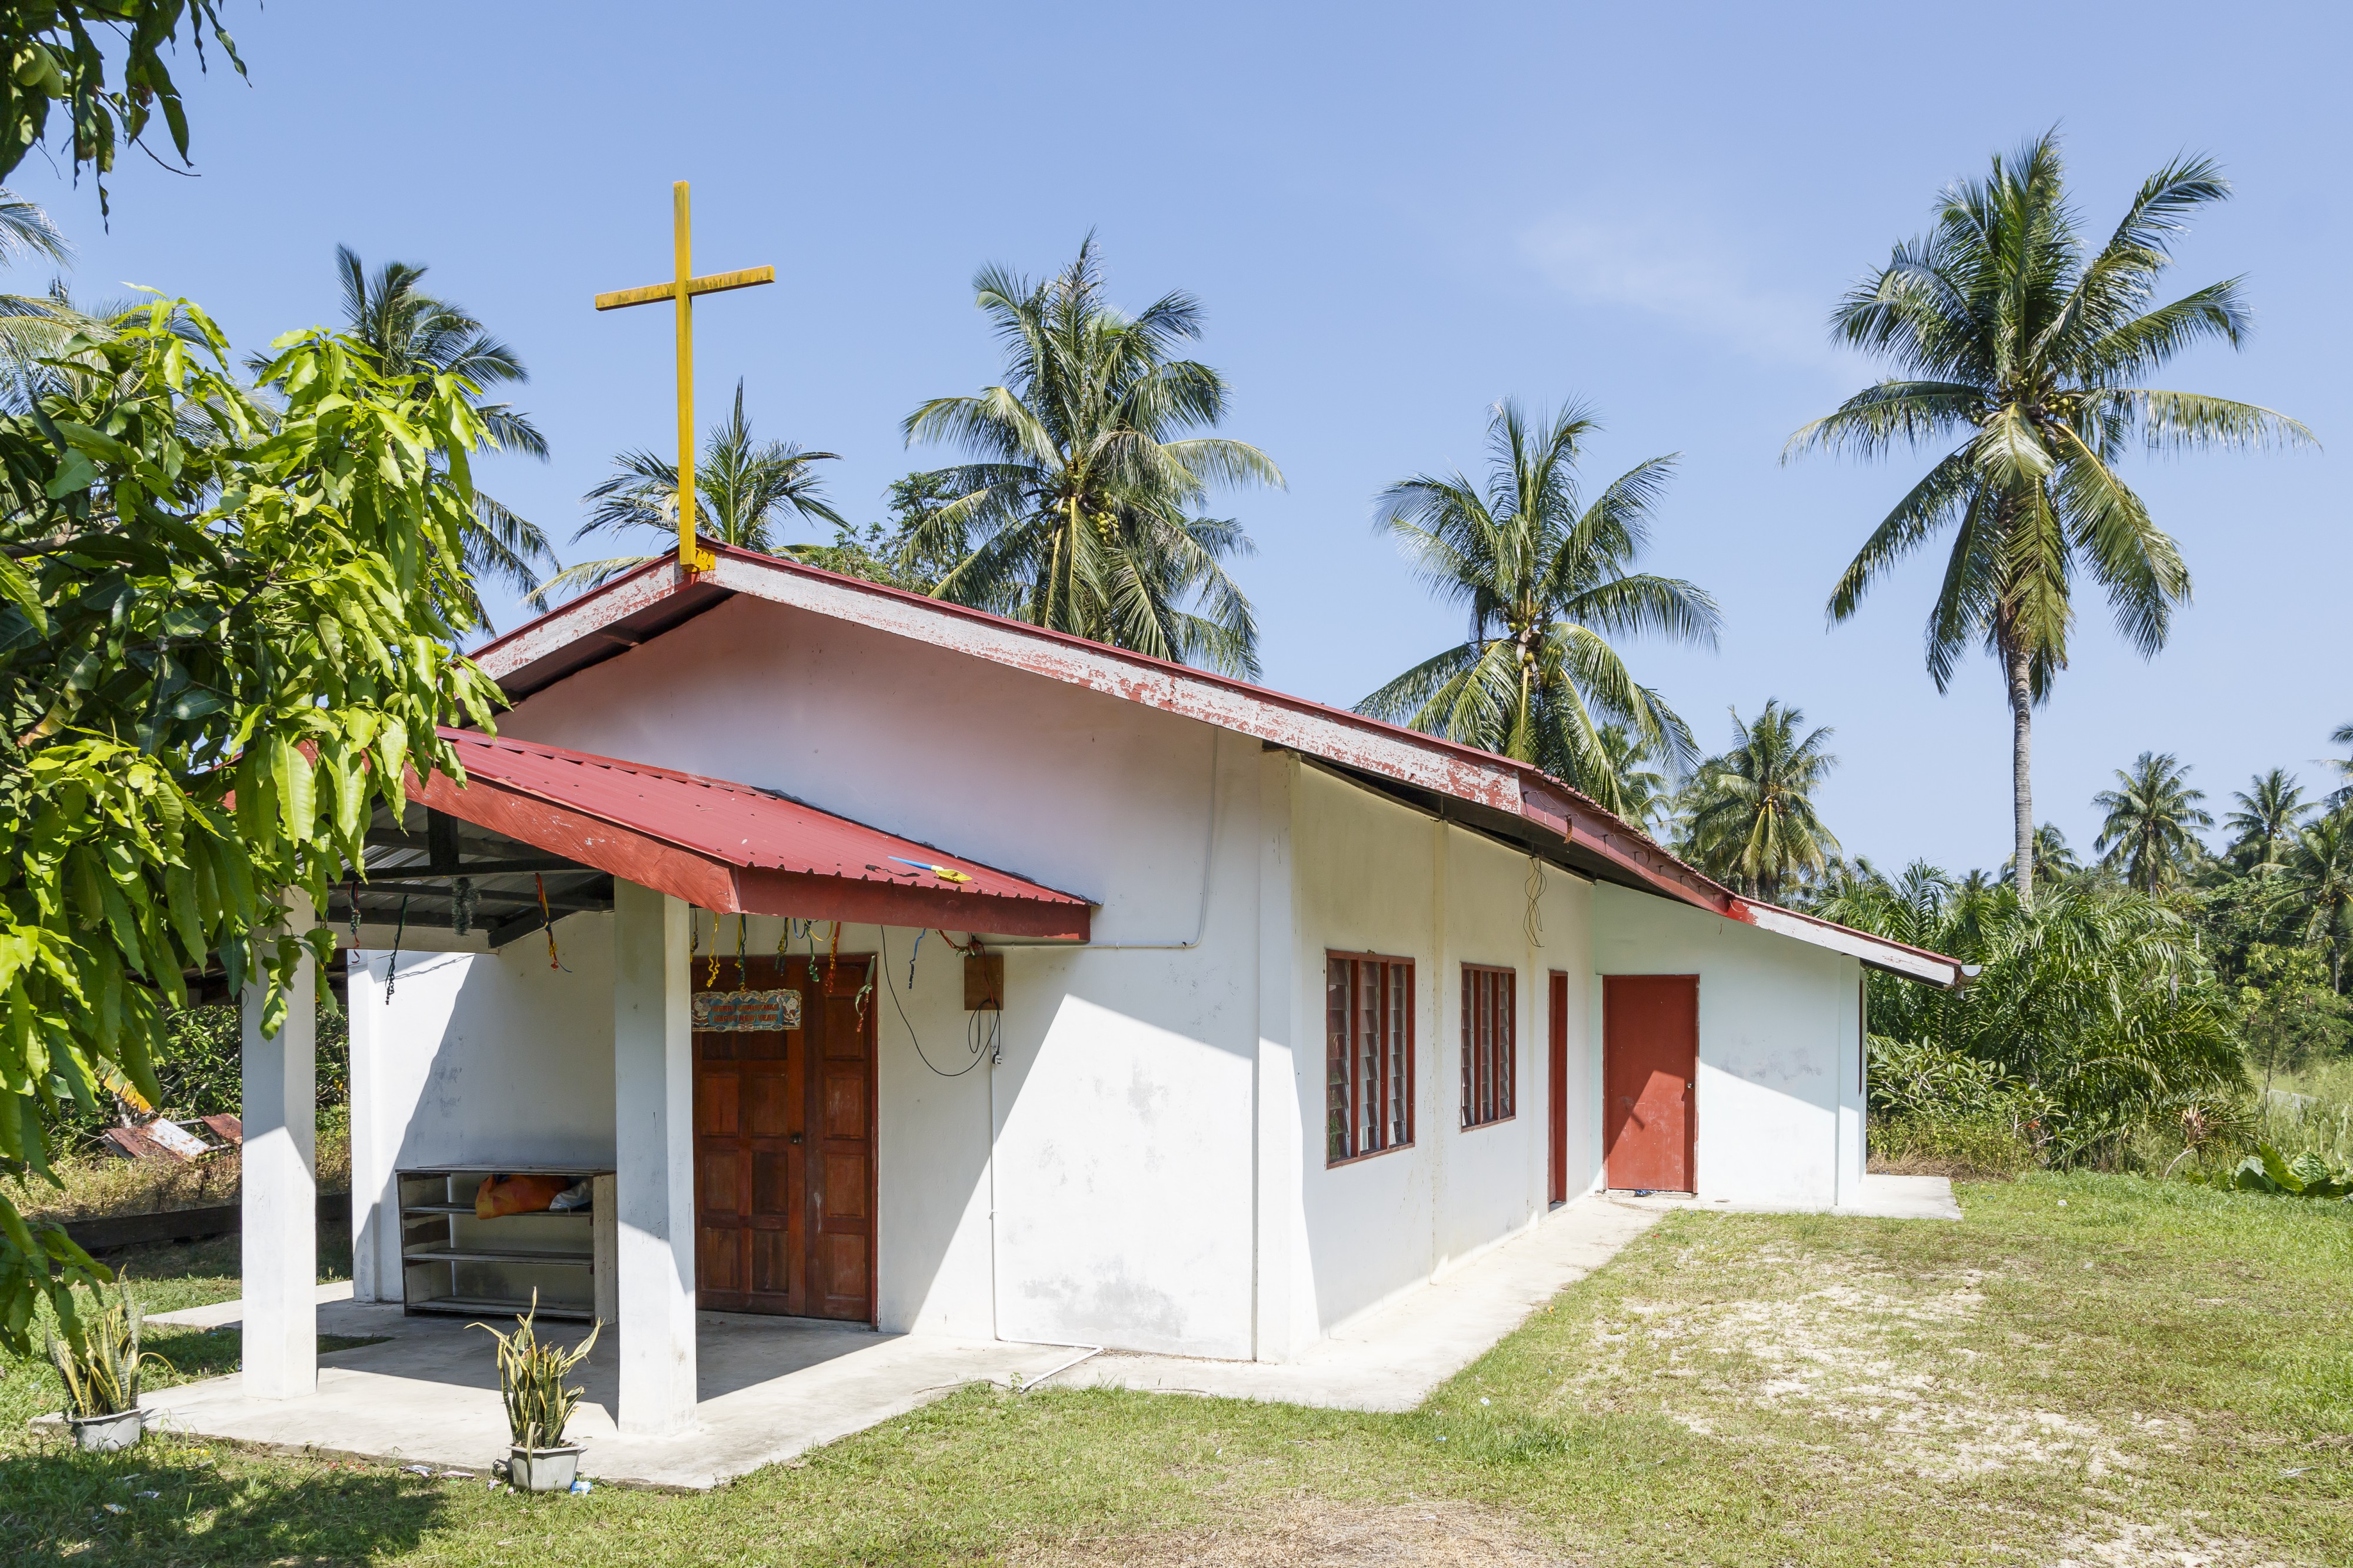 Marang-Parang Sabah Protestant-Church-02